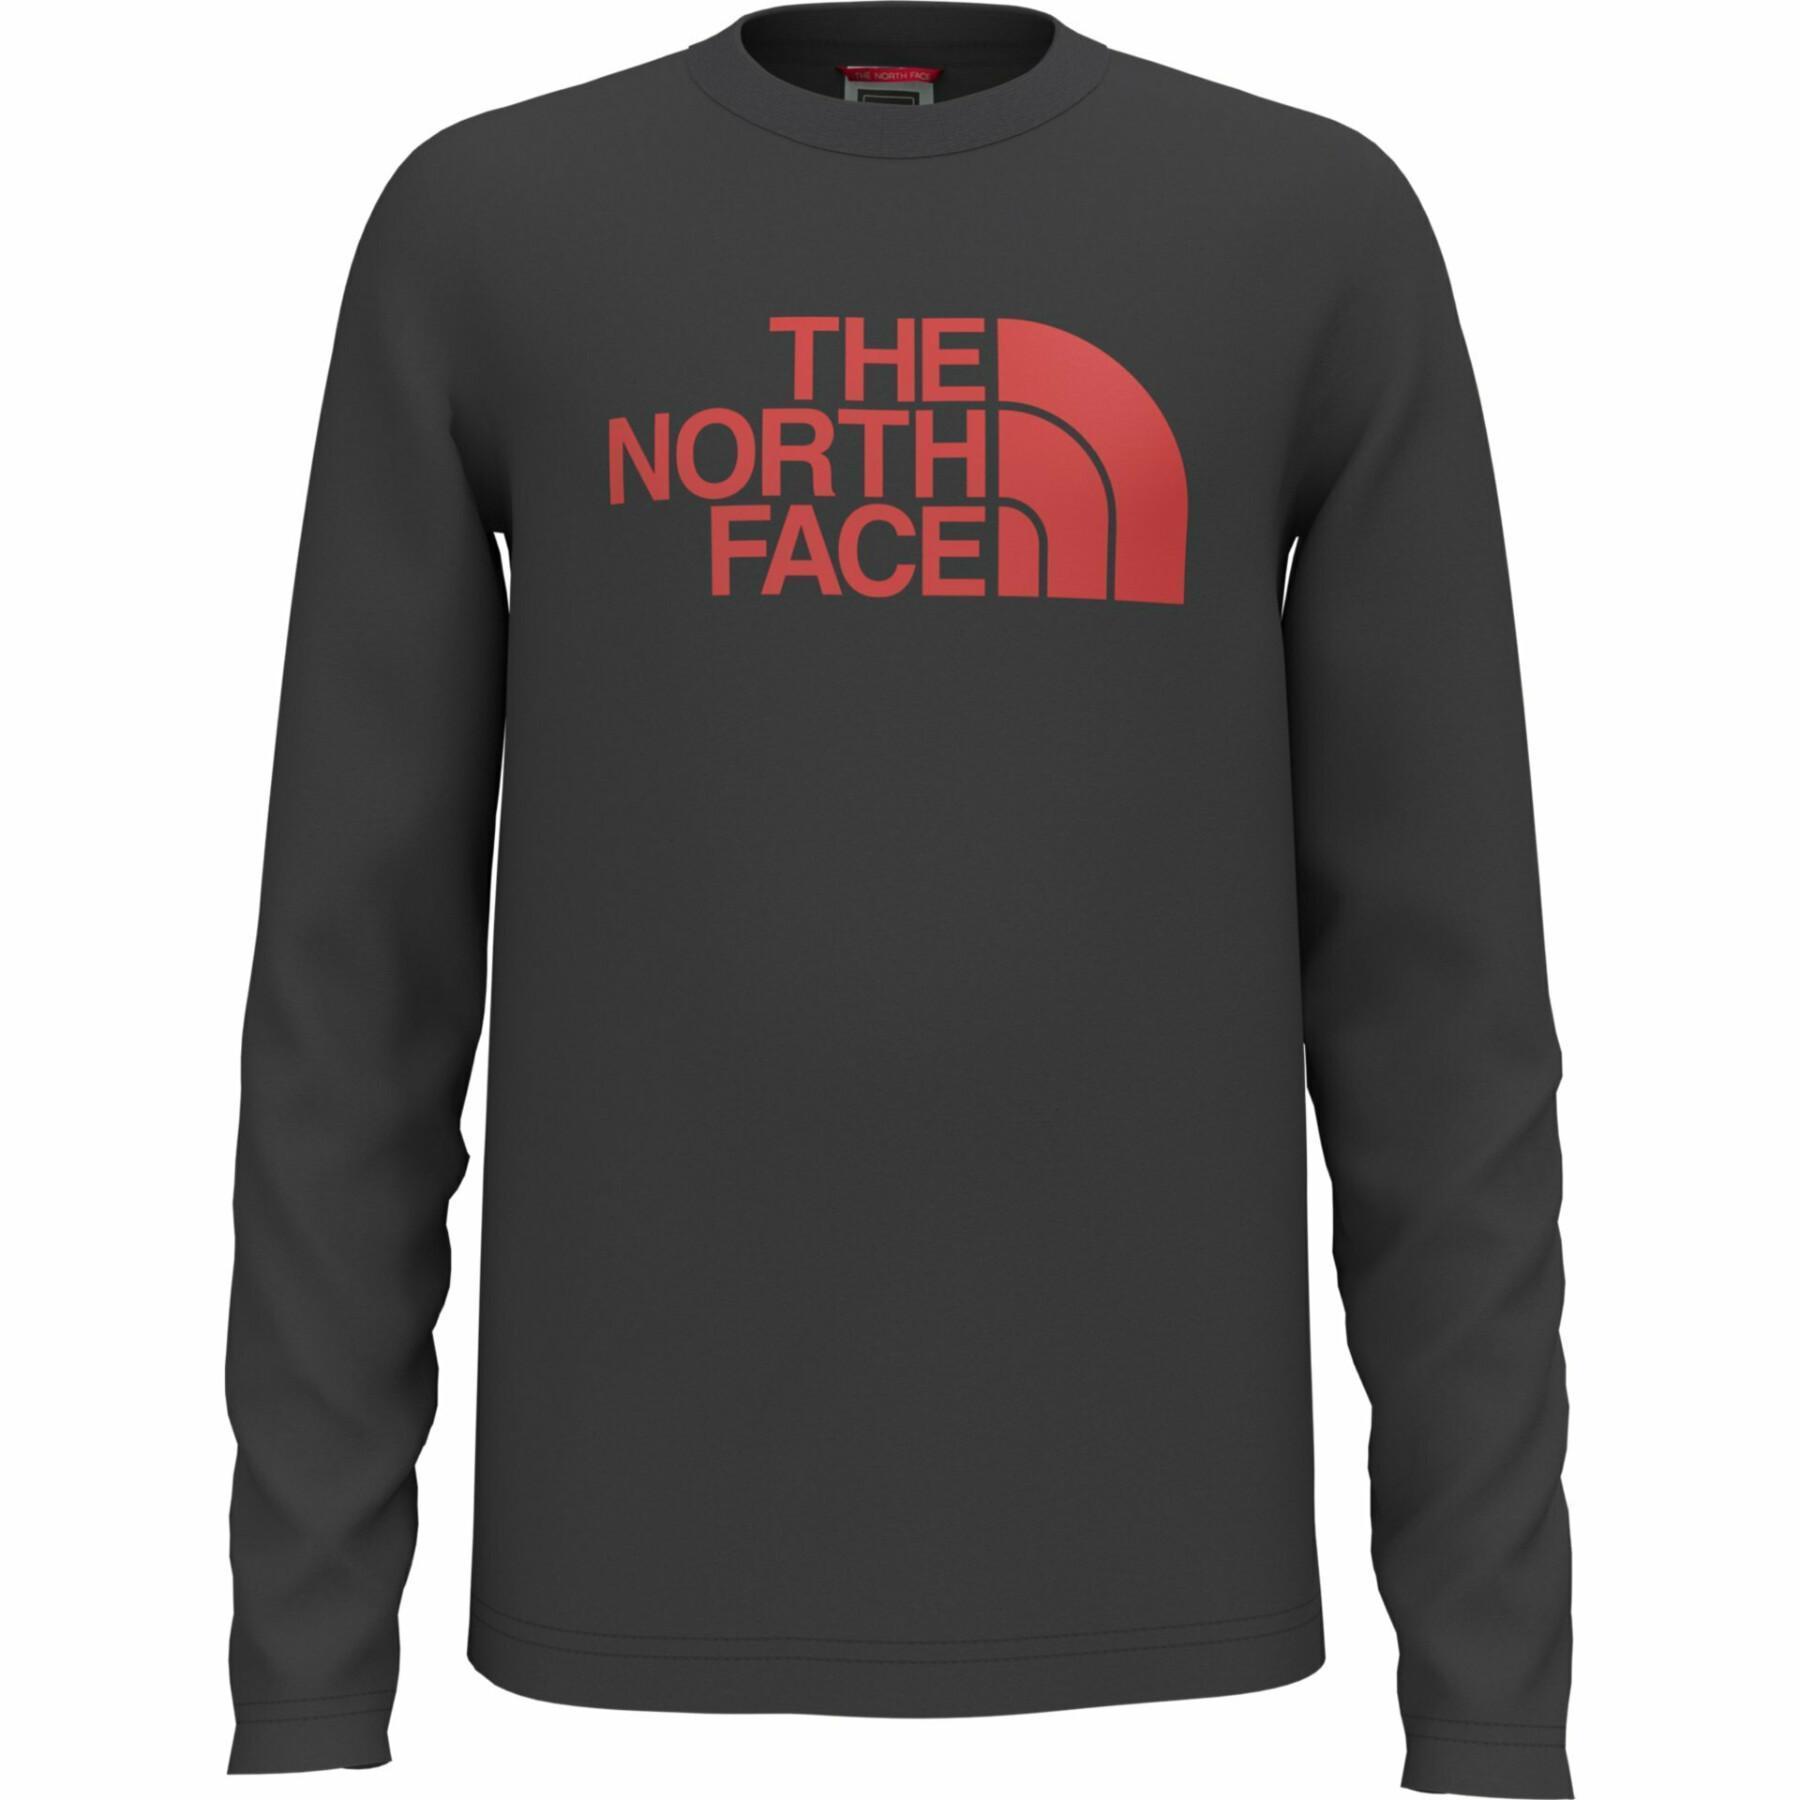 Kinder-T-shirt met lange mouwen The North Face Easy